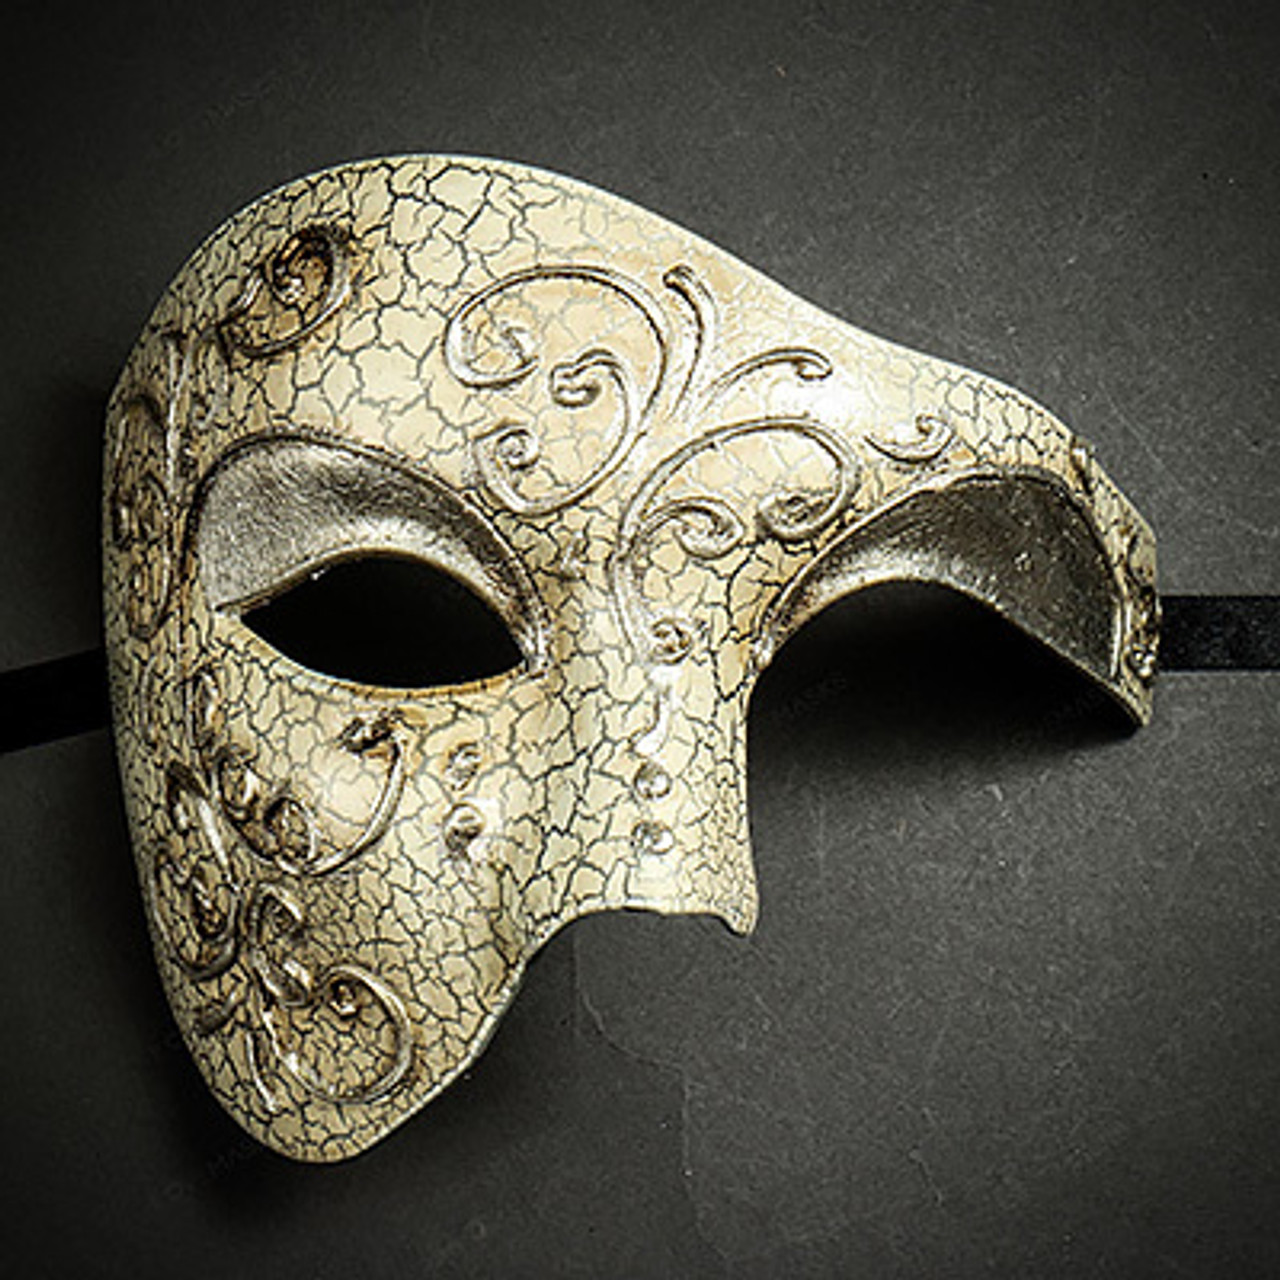 Shiny Mask, Half Face Mask, Satin Mask, Phantom Of The Opera Mask